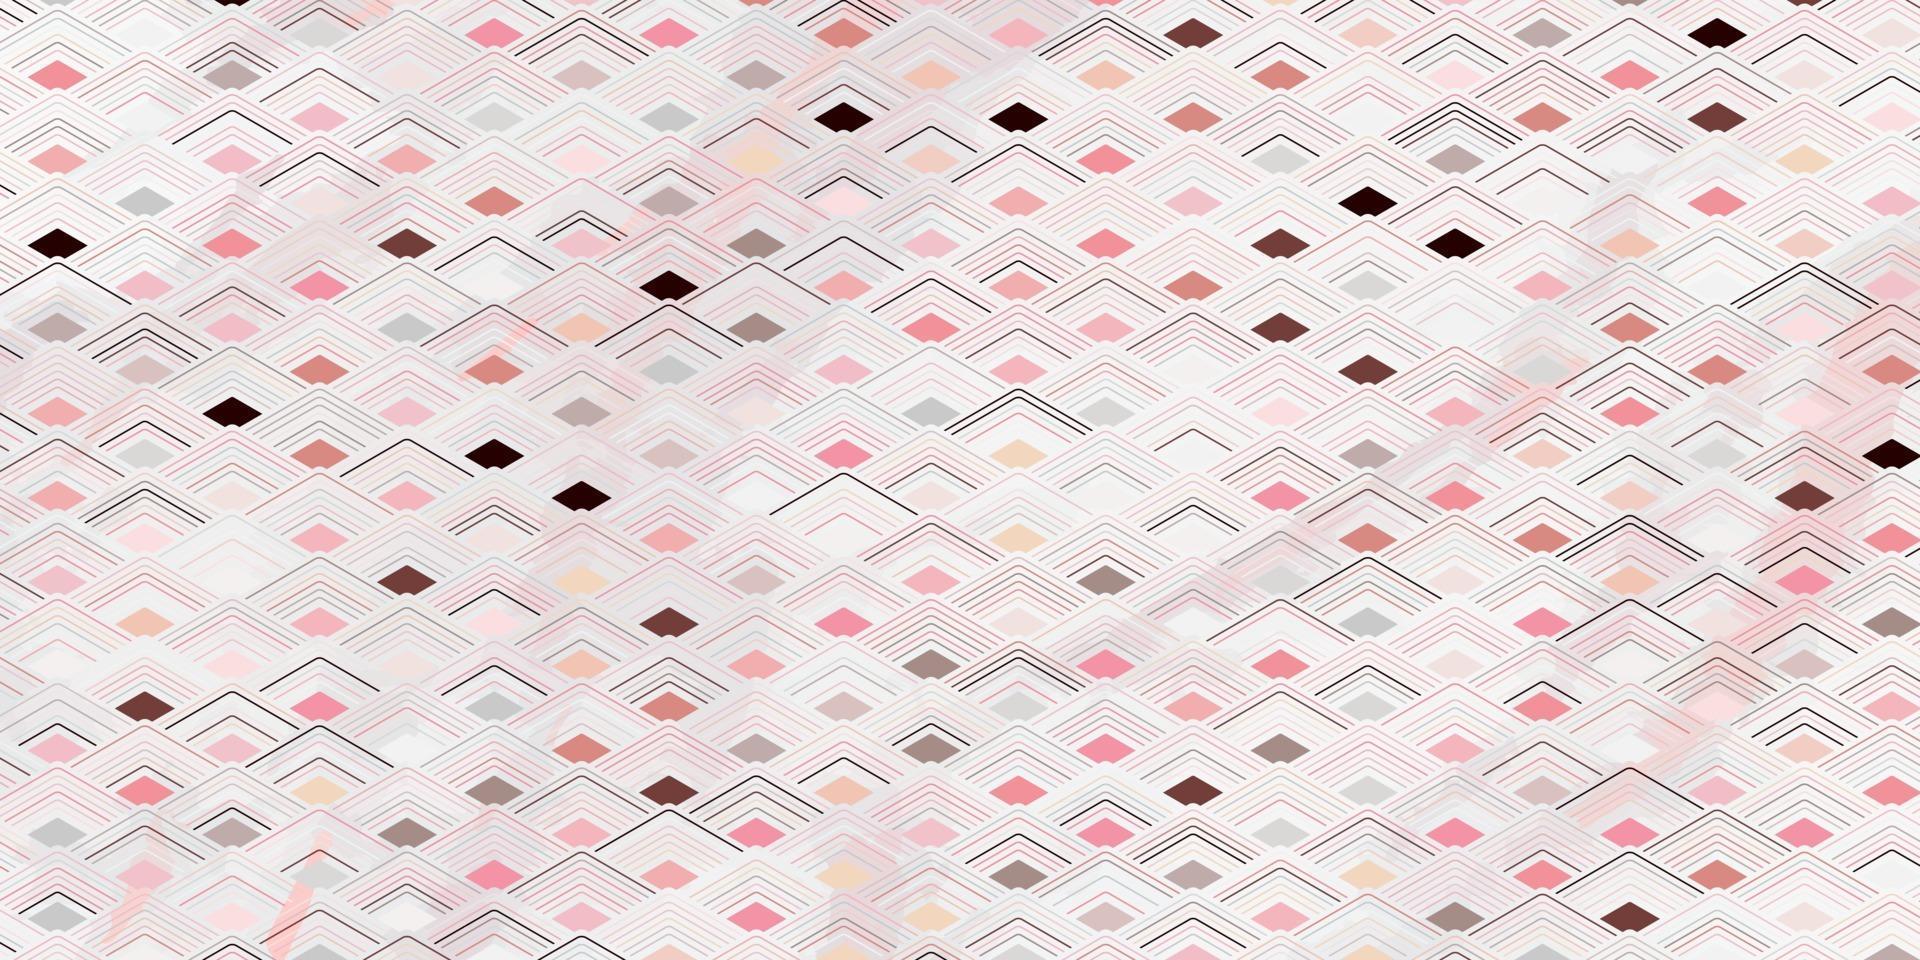 Fondo rosa superpuesto poligonal de patrones sin fisuras geométricas abstractas vector